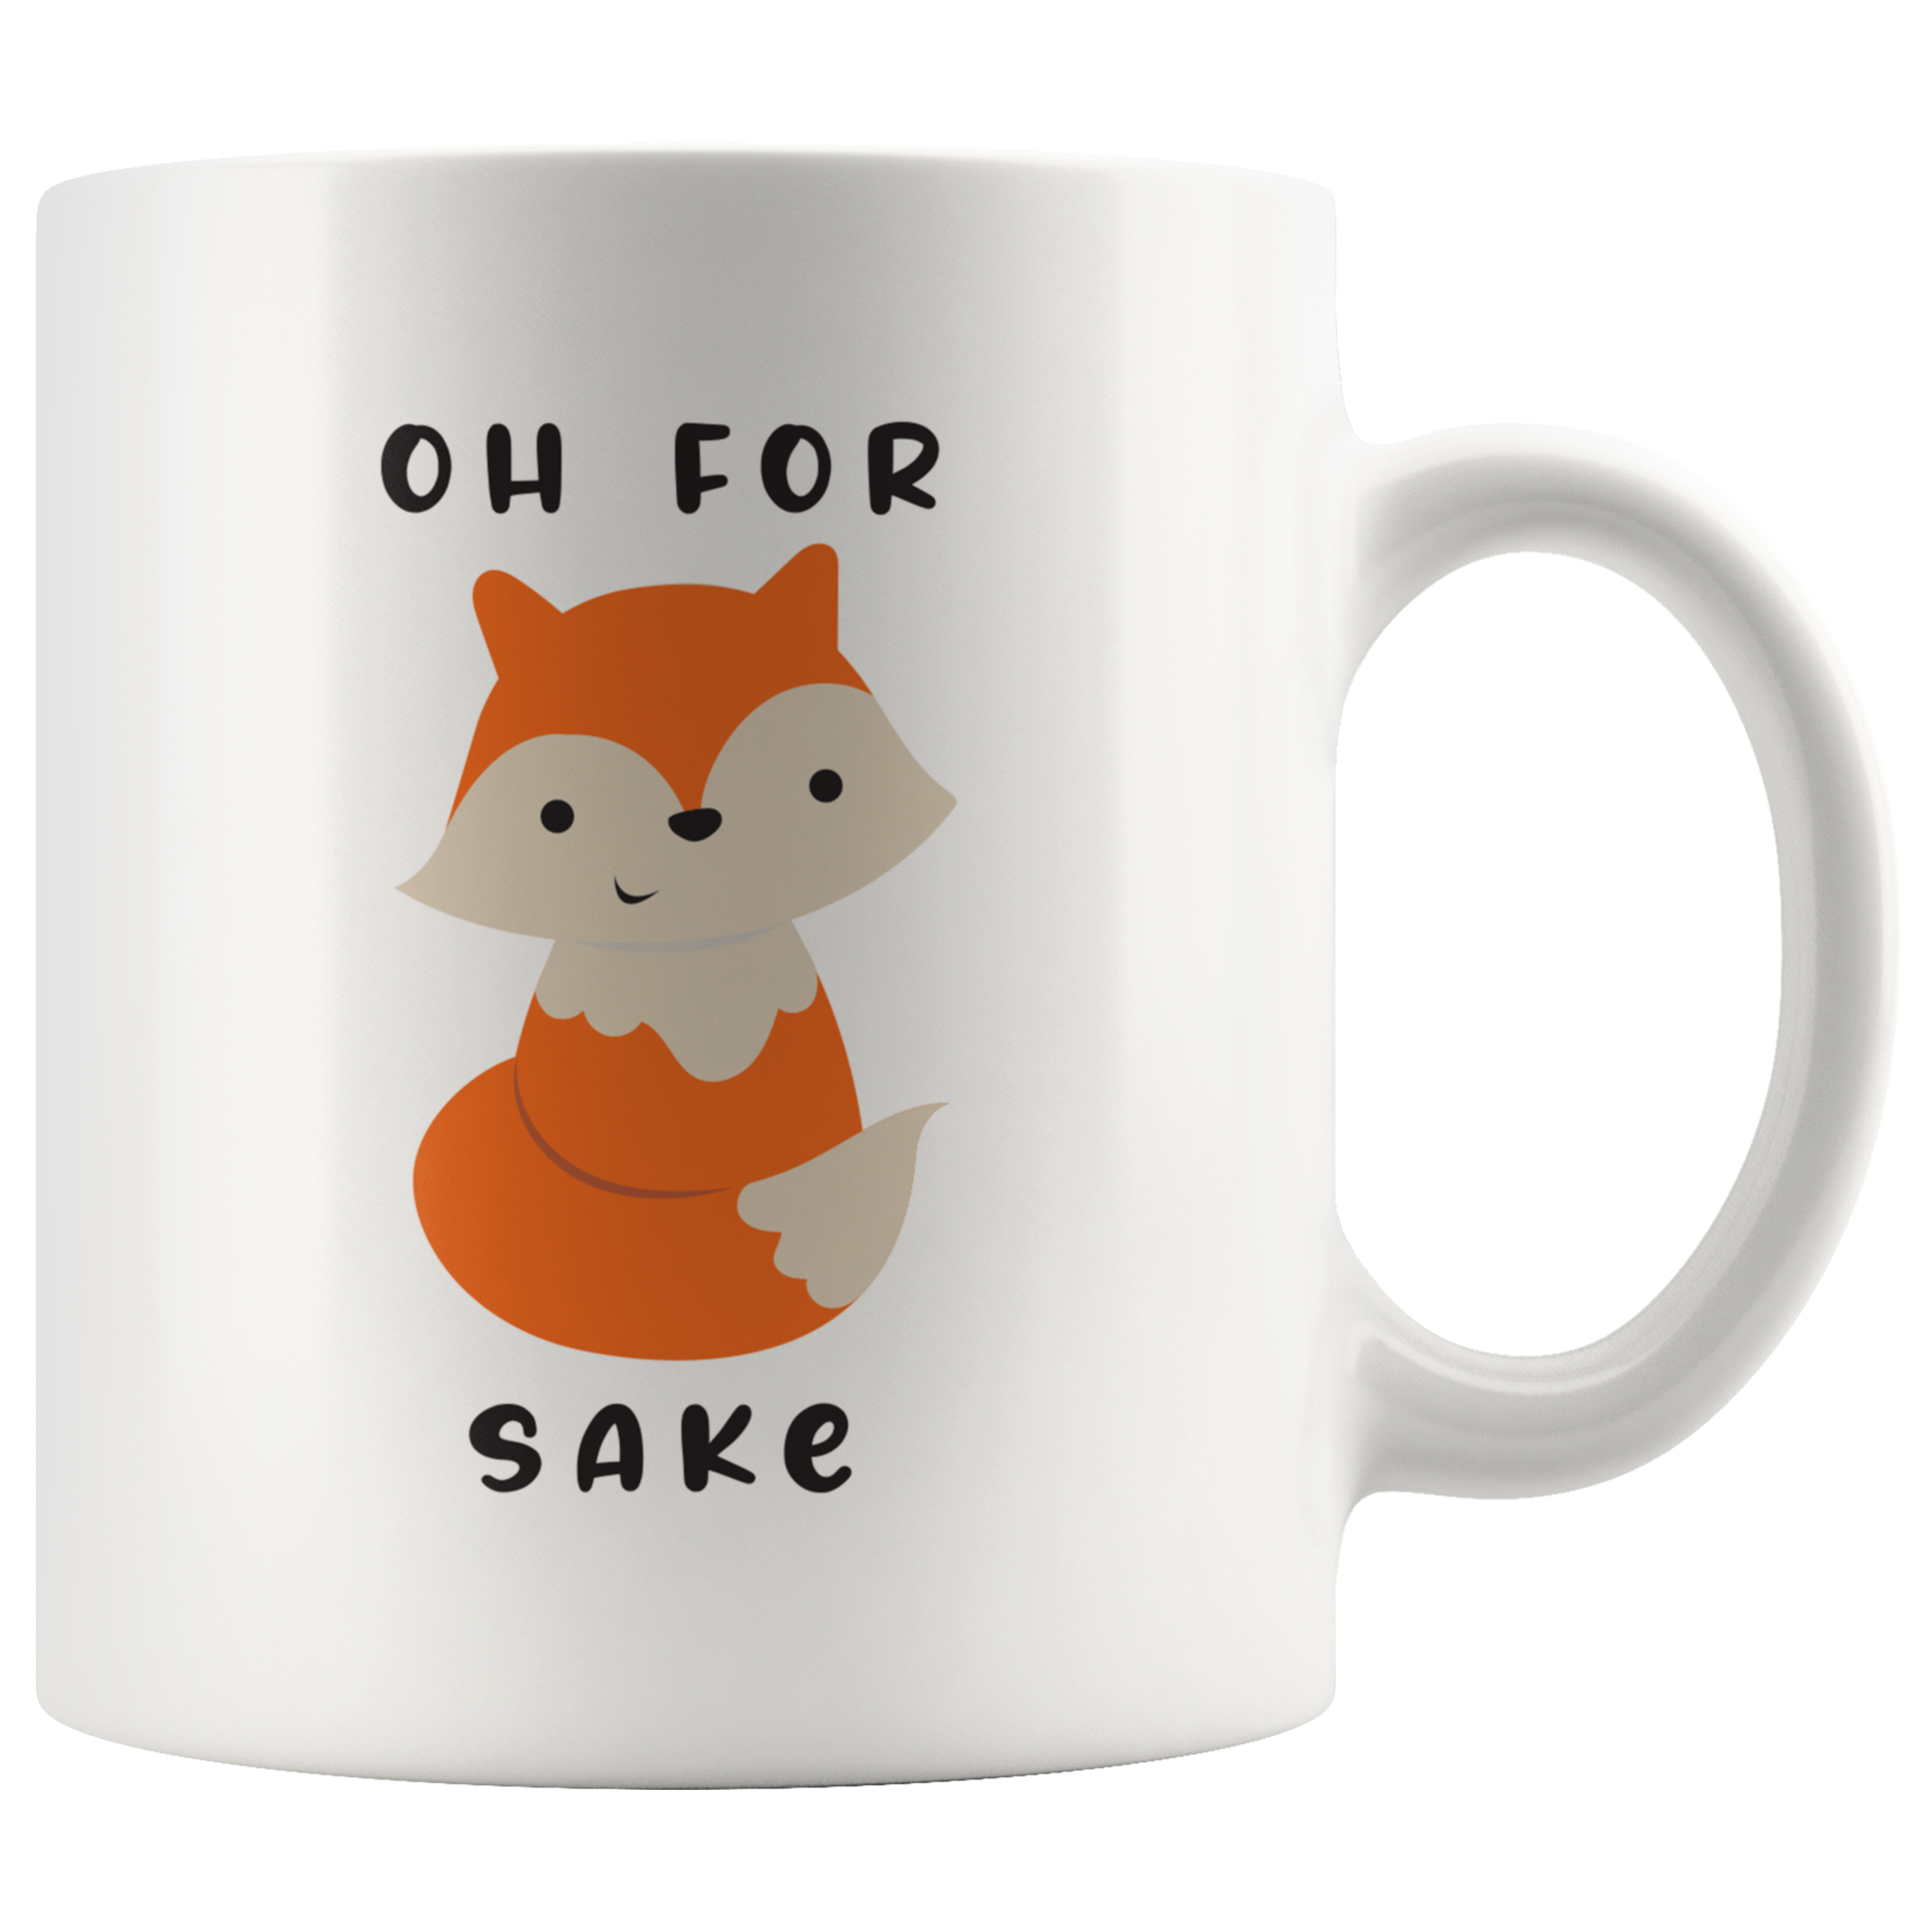 For Fox Sake Coffee Mug